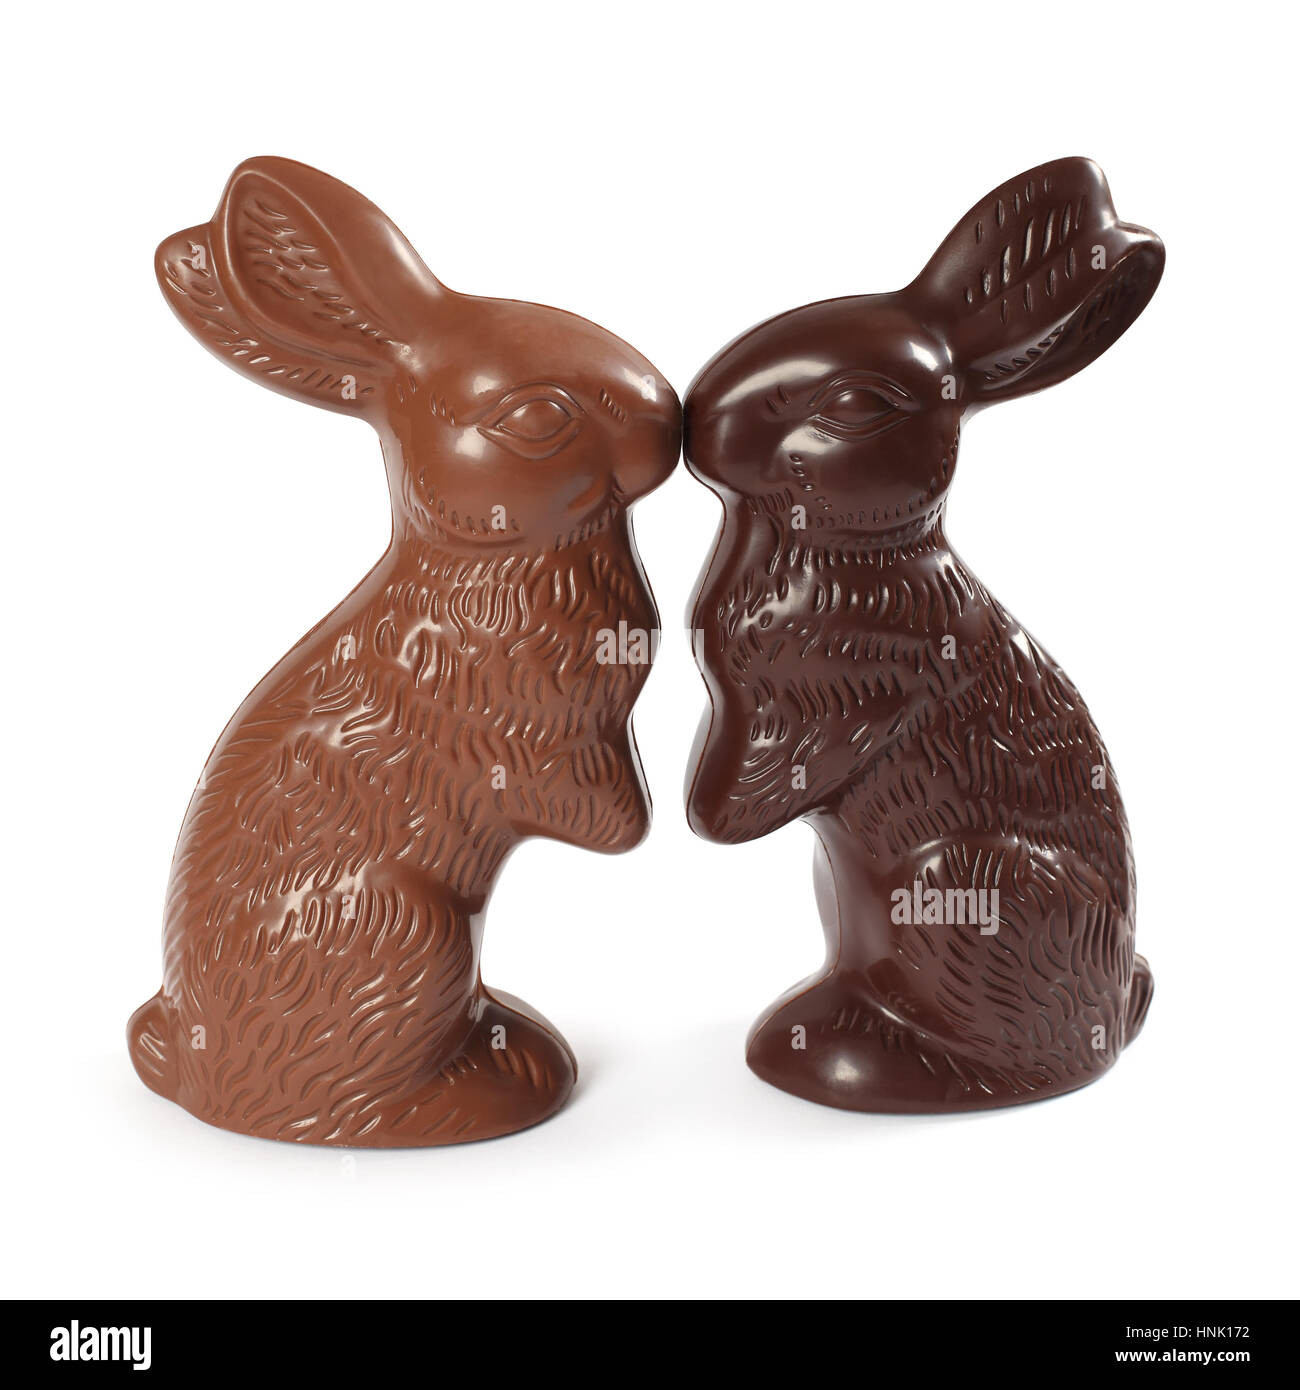 Photo de deux lapins de Pâques au chocolat baisers, l'un chocolat au lait et un chocolat noir. Chemin de détourage inclus. Banque D'Images